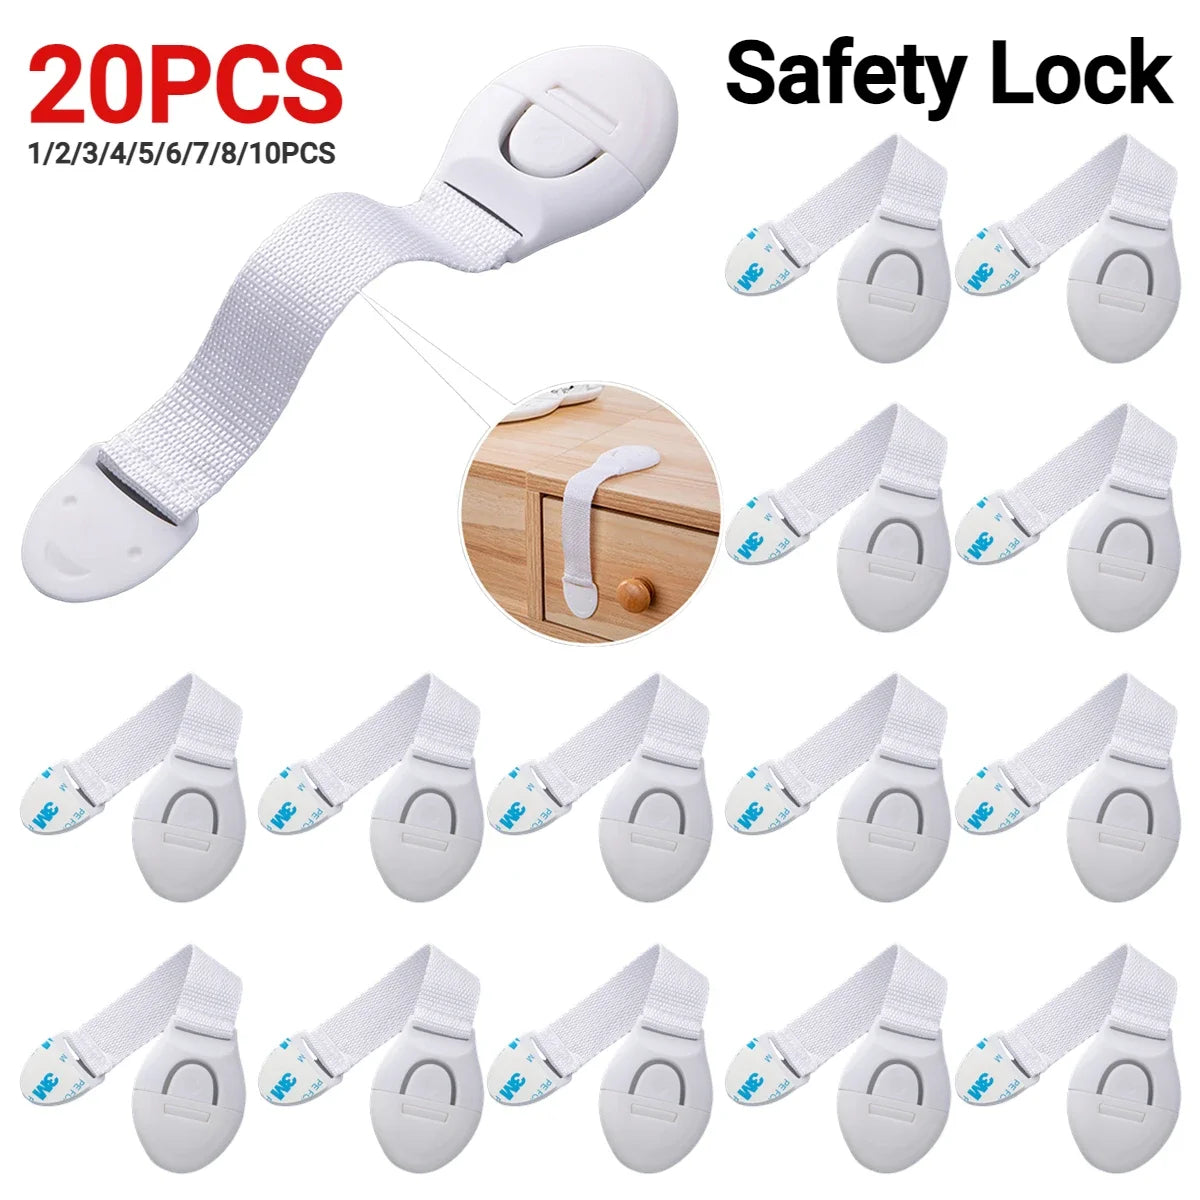 drawer lock, safety lock, door safety lock, cabinet protection, cabinet drawer lock, drawer safety